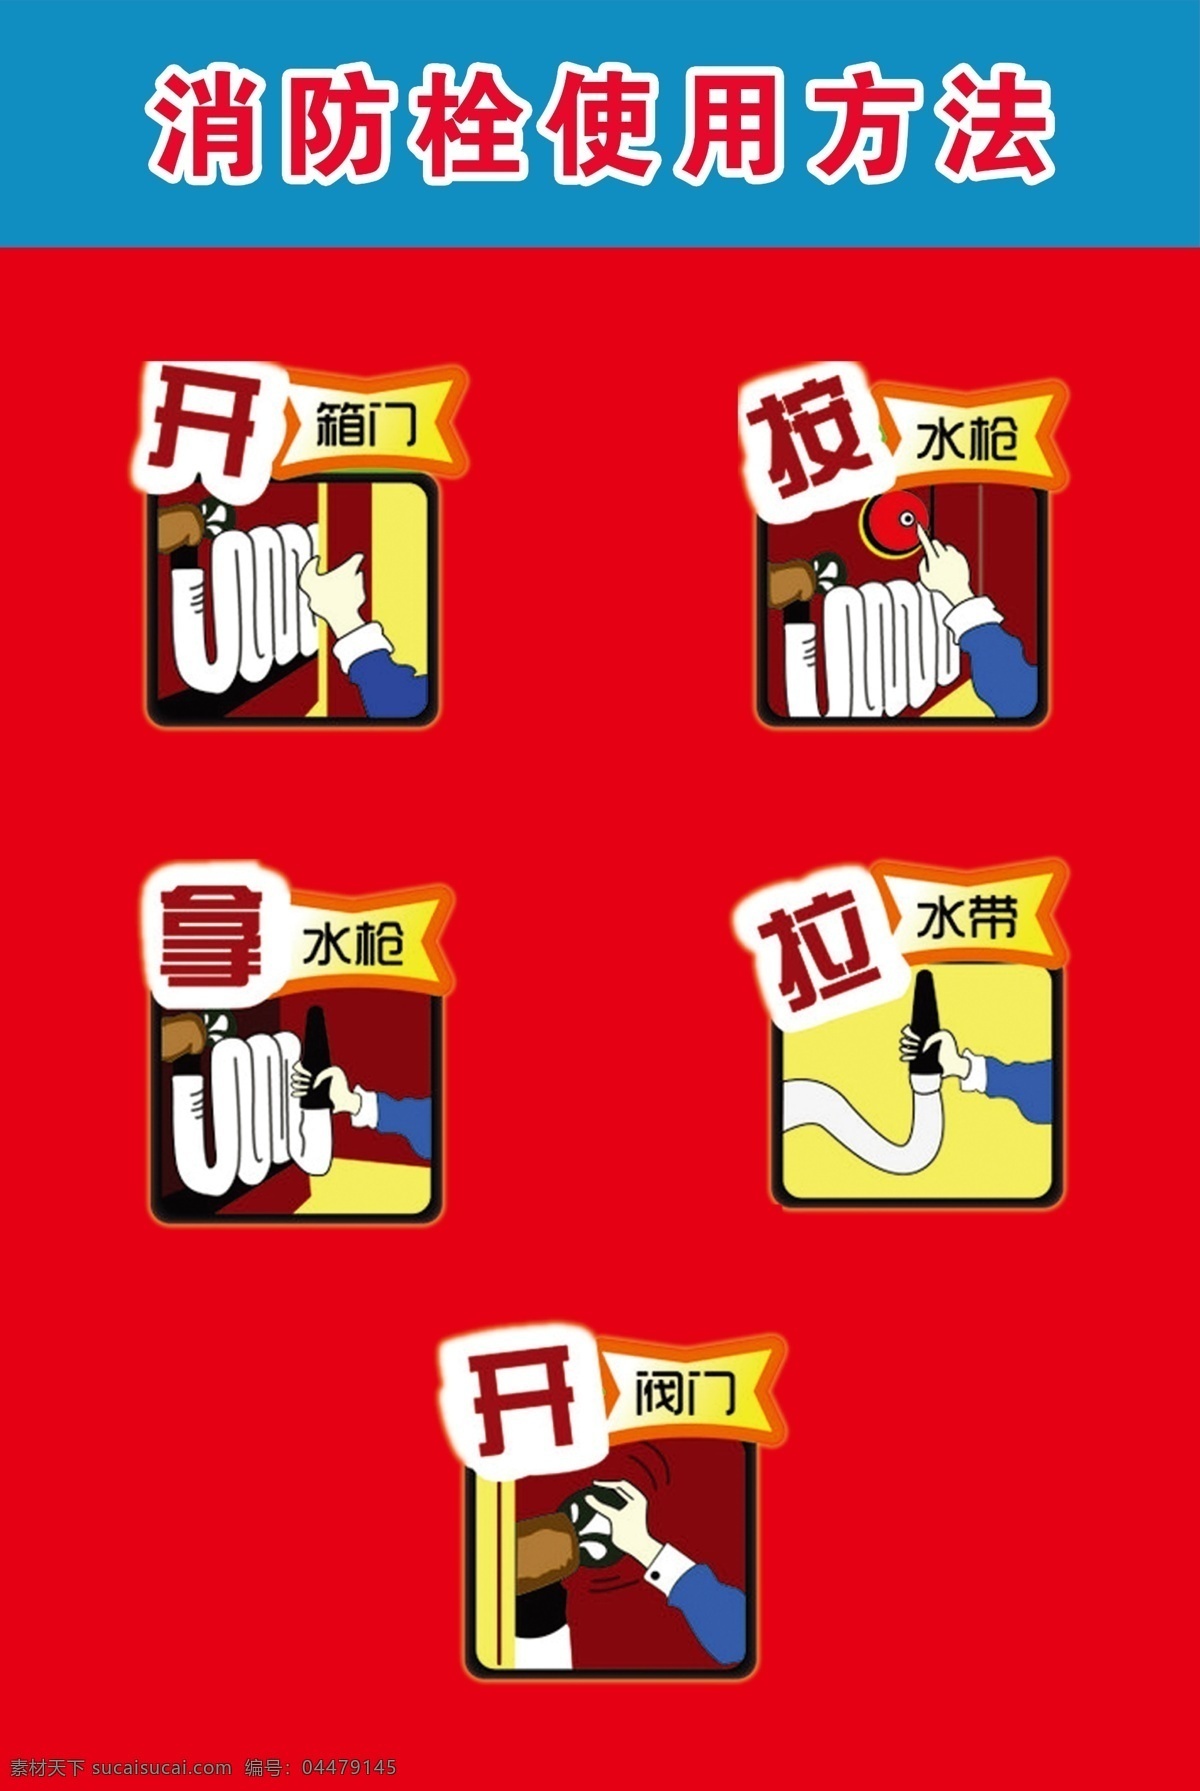 消防栓 使用方法 使用 方法 宣传 图例 消防安全